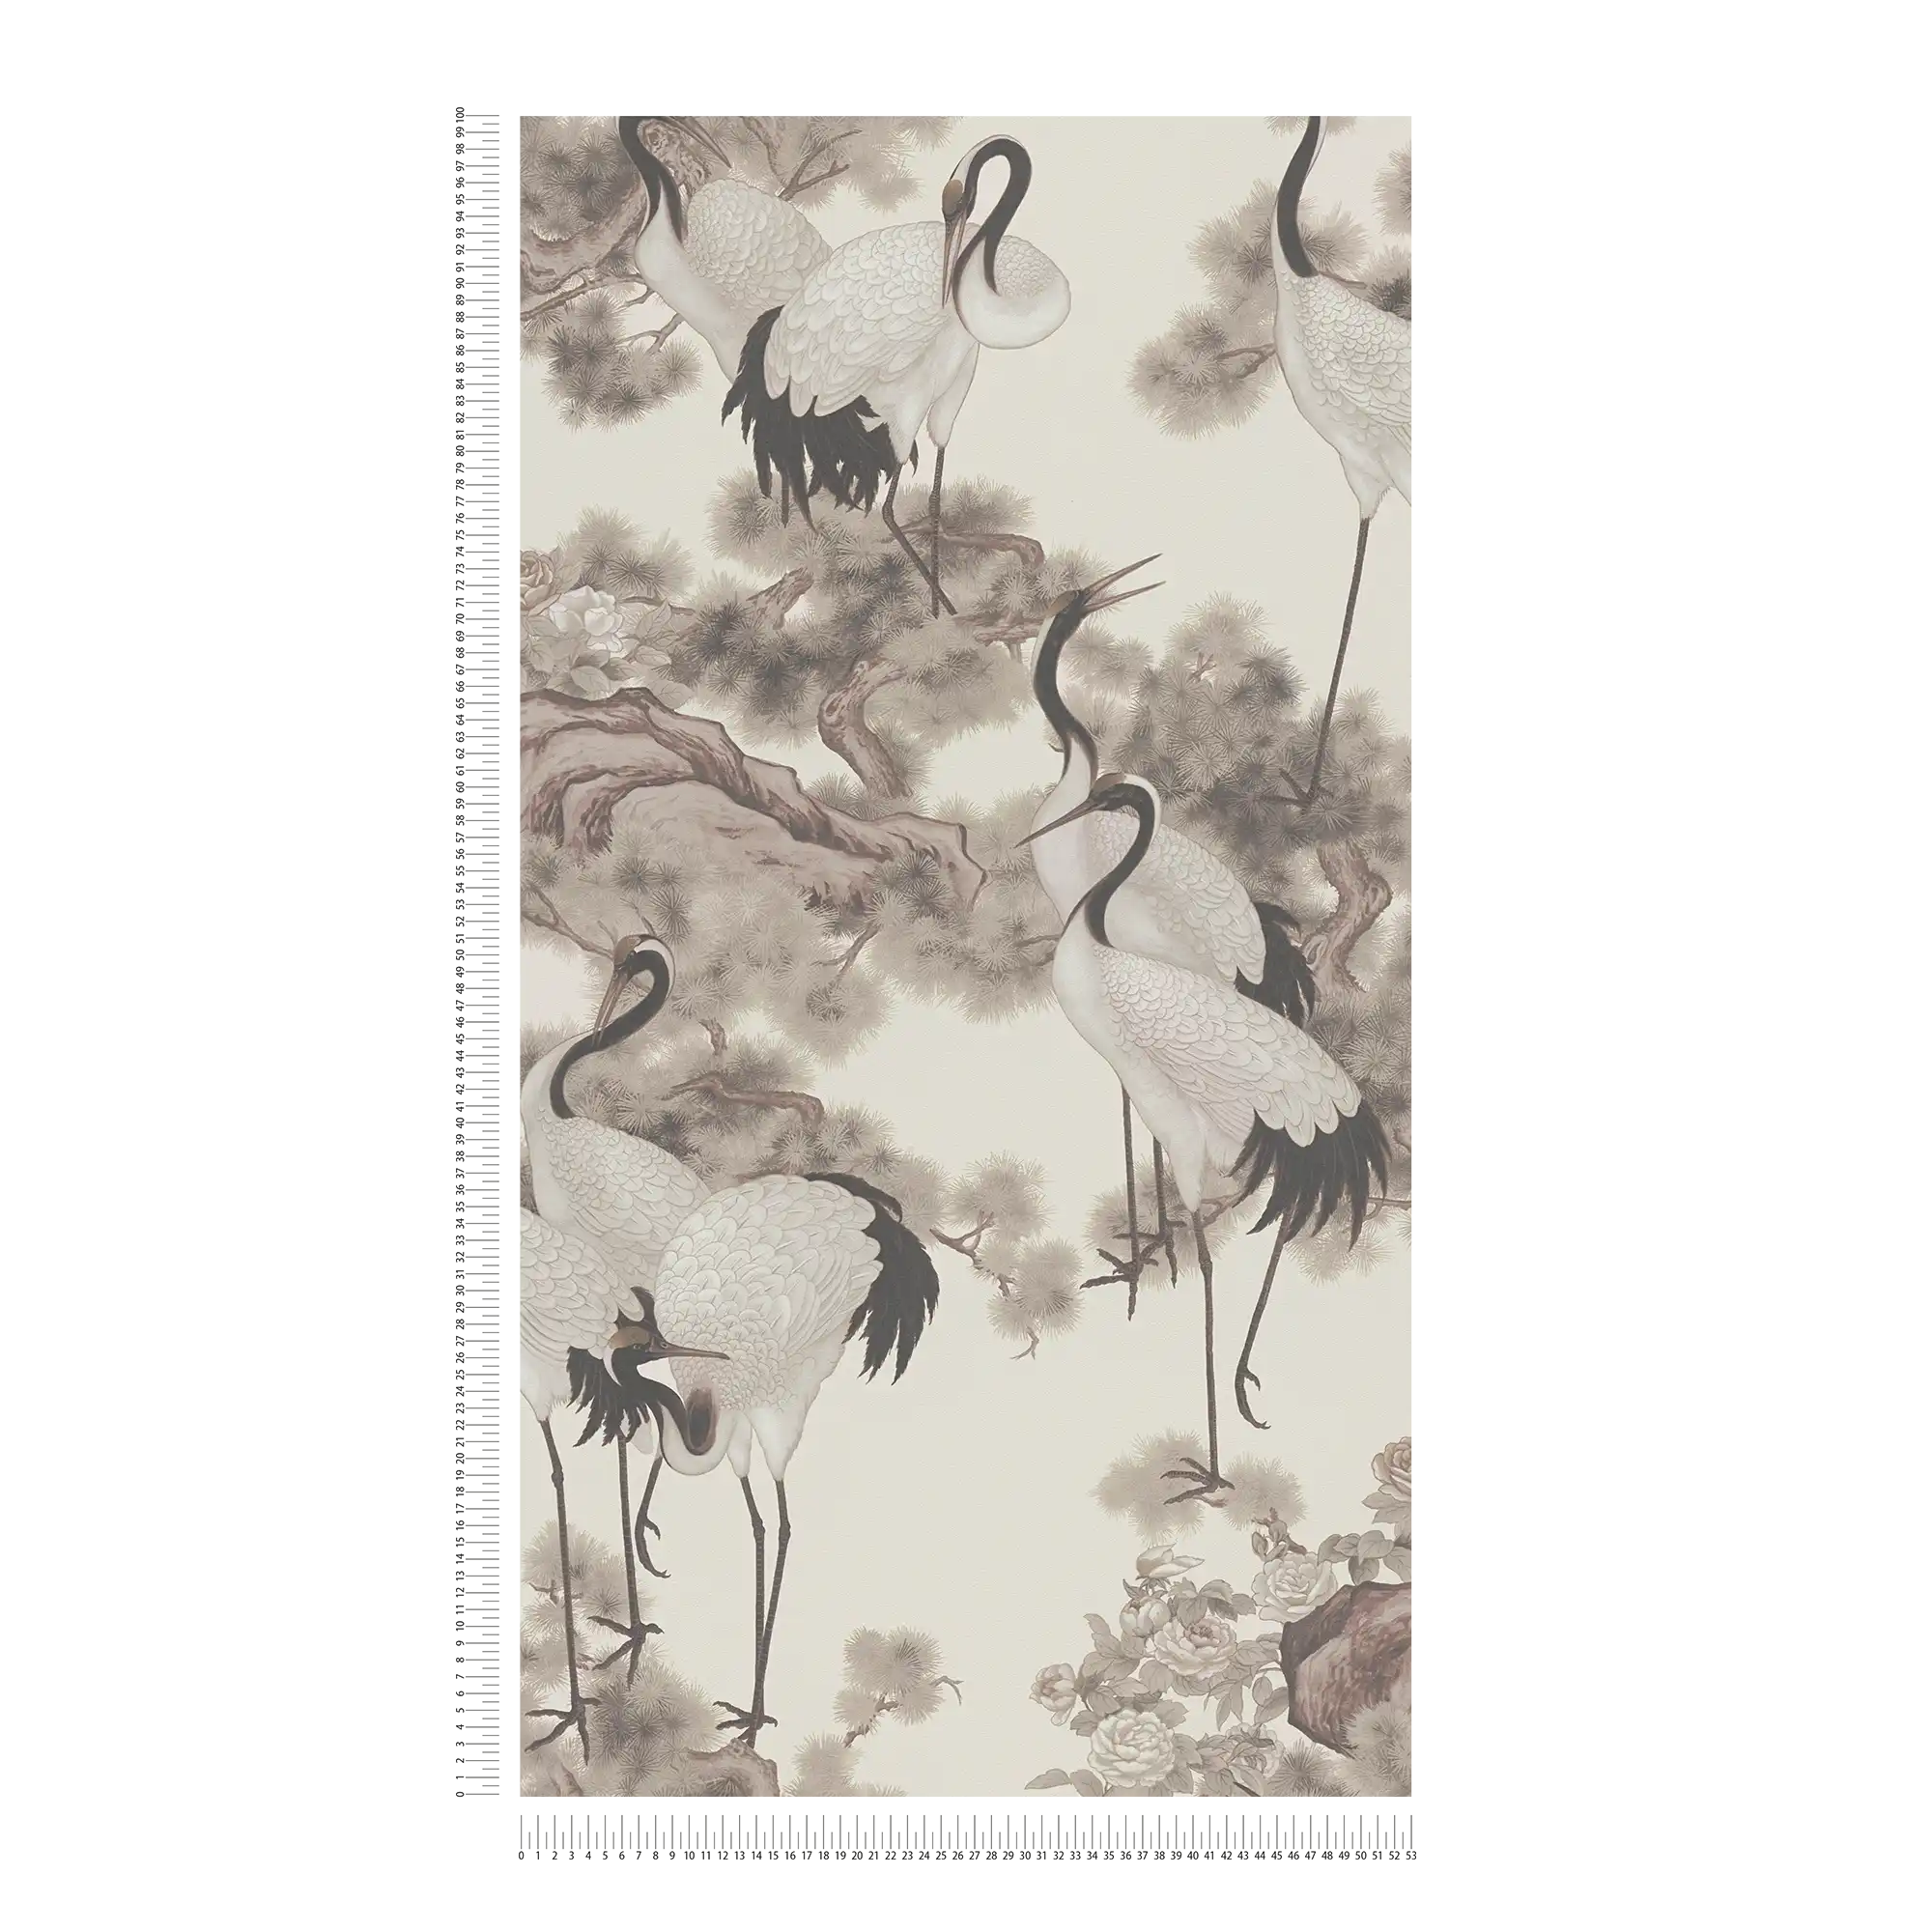             Japandi papier peint grues style asiatique - crème, gris
        